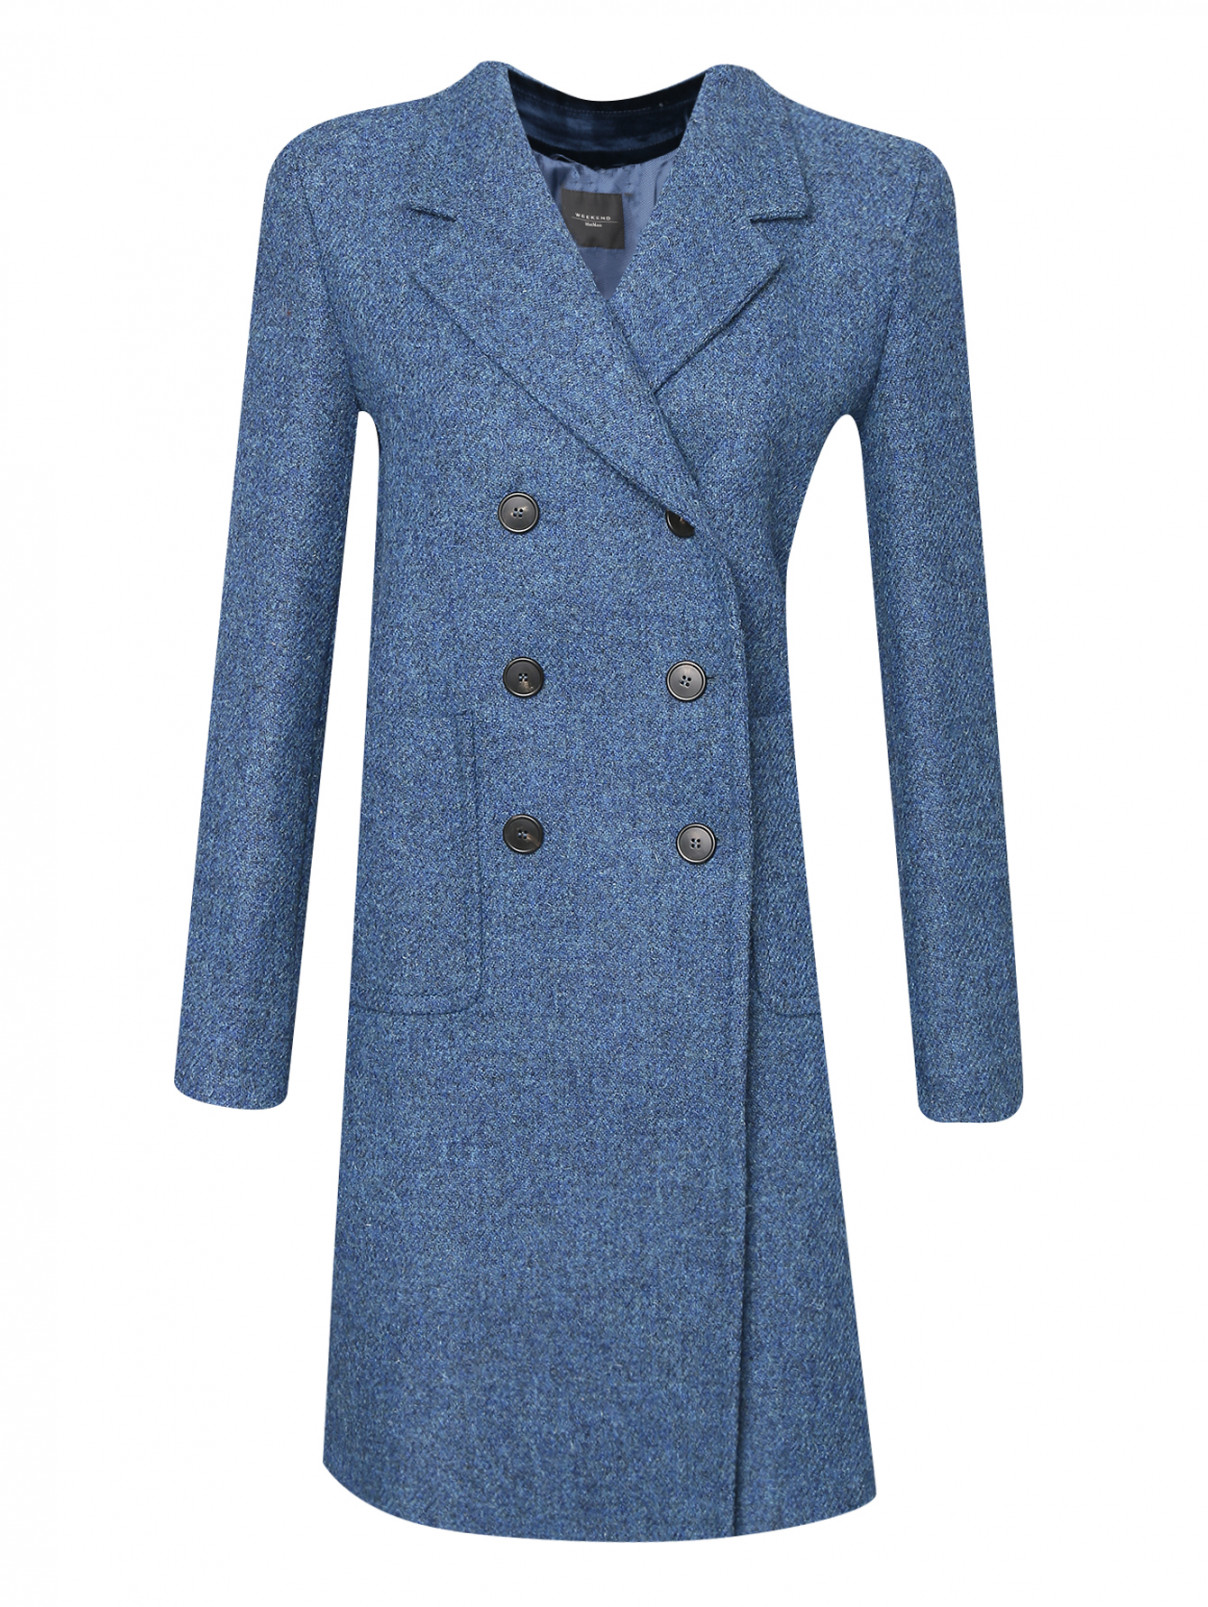 Полупальто из шерсти с накладными карманами Weekend Max Mara  –  Общий вид  – Цвет:  Синий